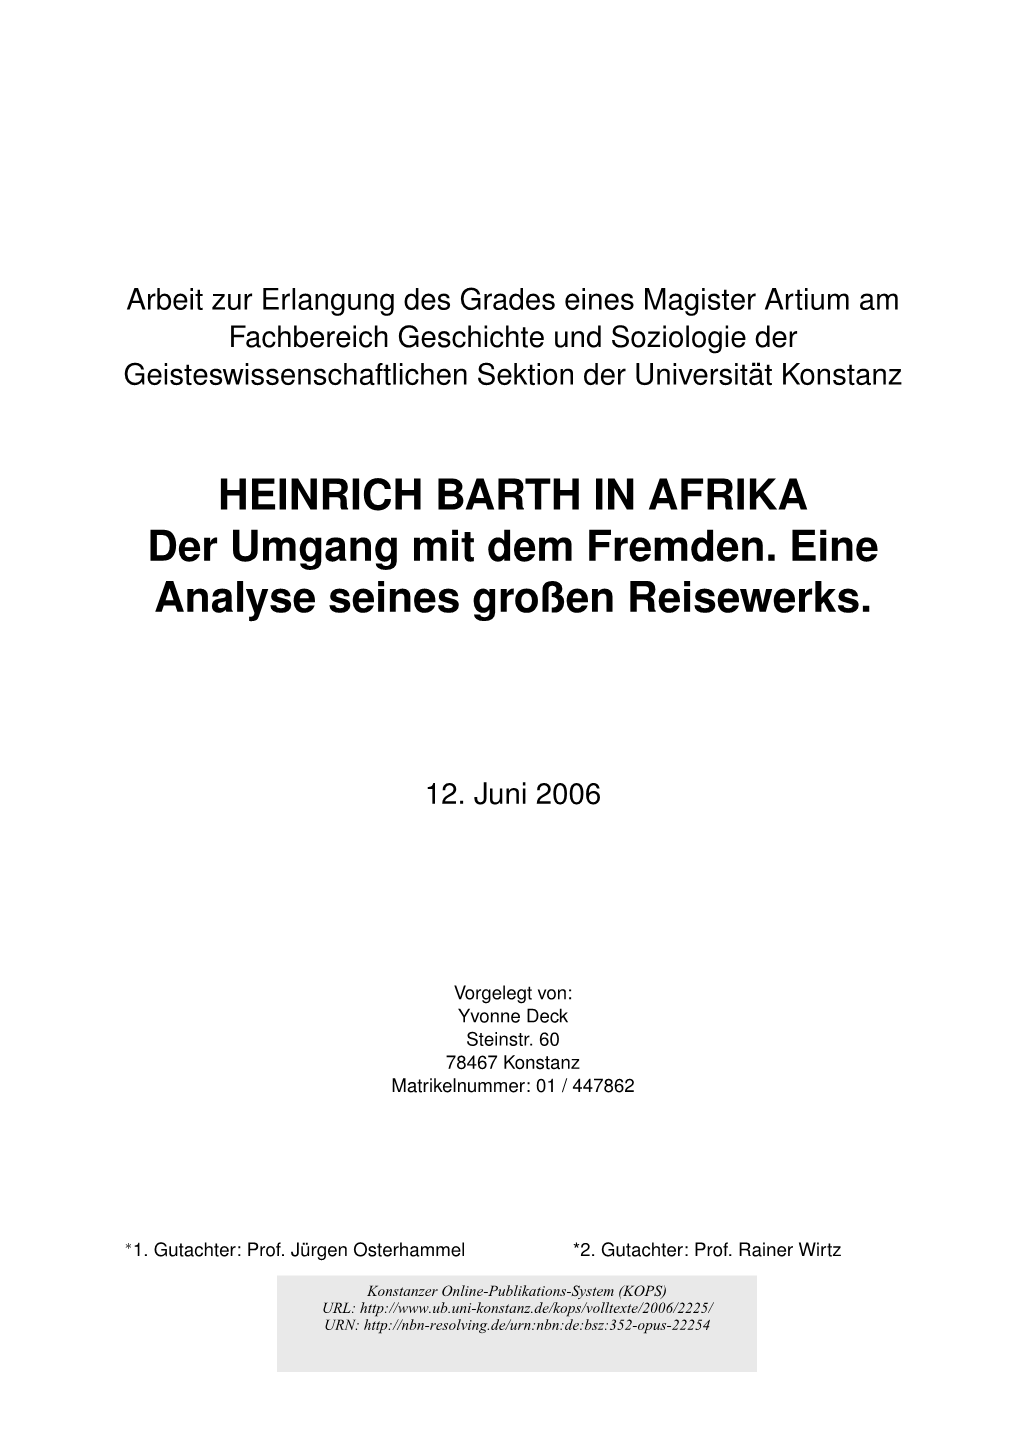 Heinrich Barth in Afrika. Der Umgang Mit Dem Fremden. Eine Analyse